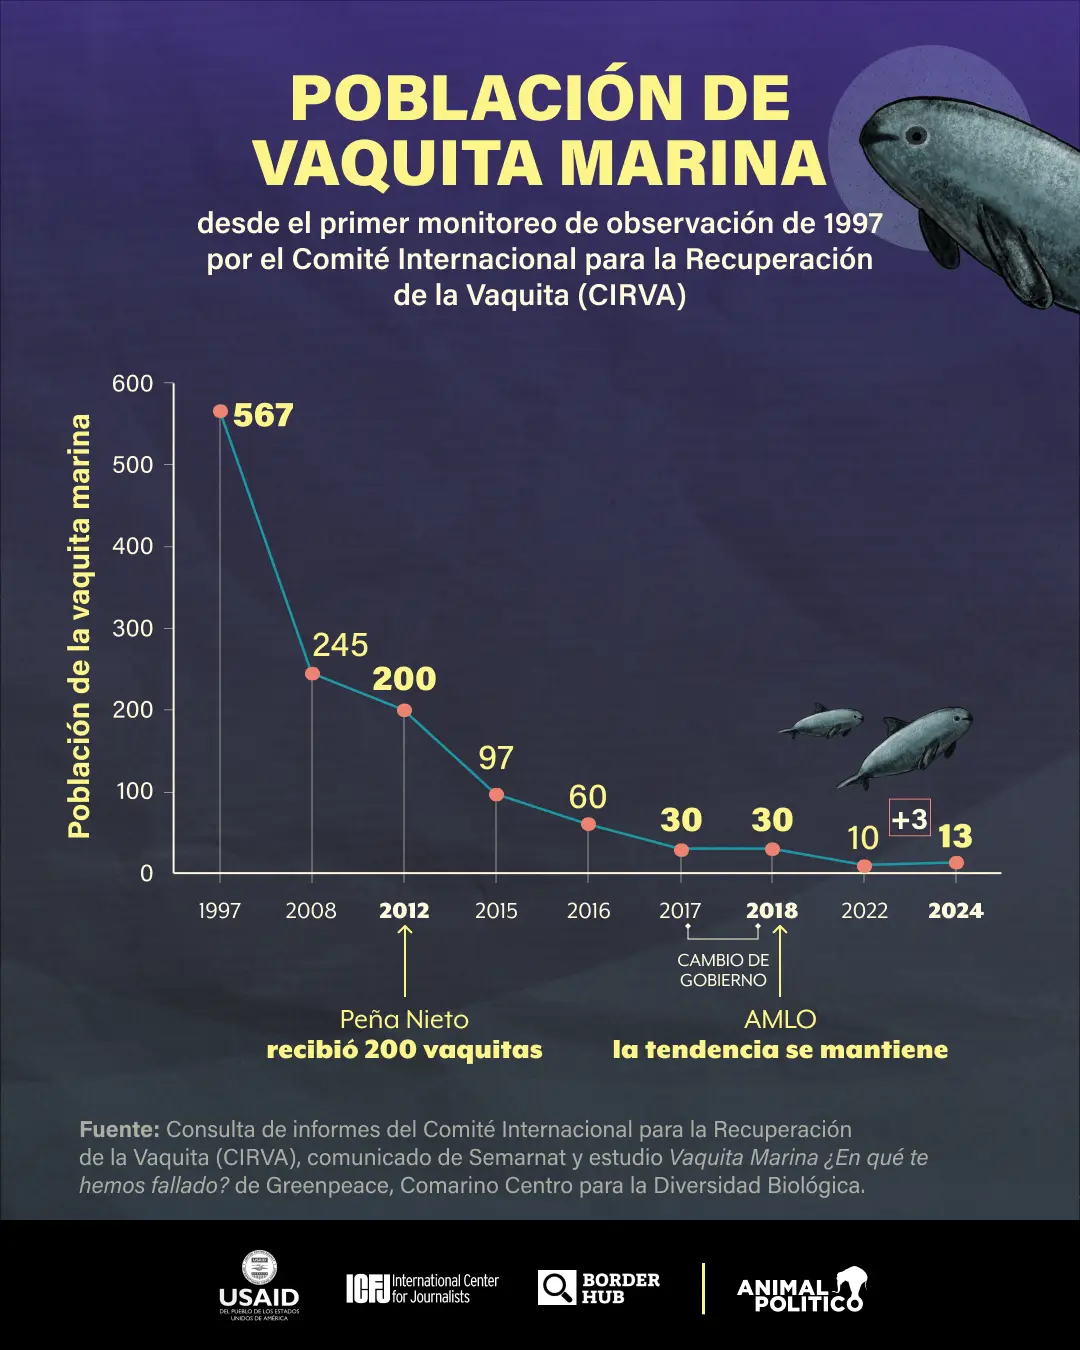 vaquita marina: gobierno de amlo abandonó desde 2021 proyecto esencial para su conservación